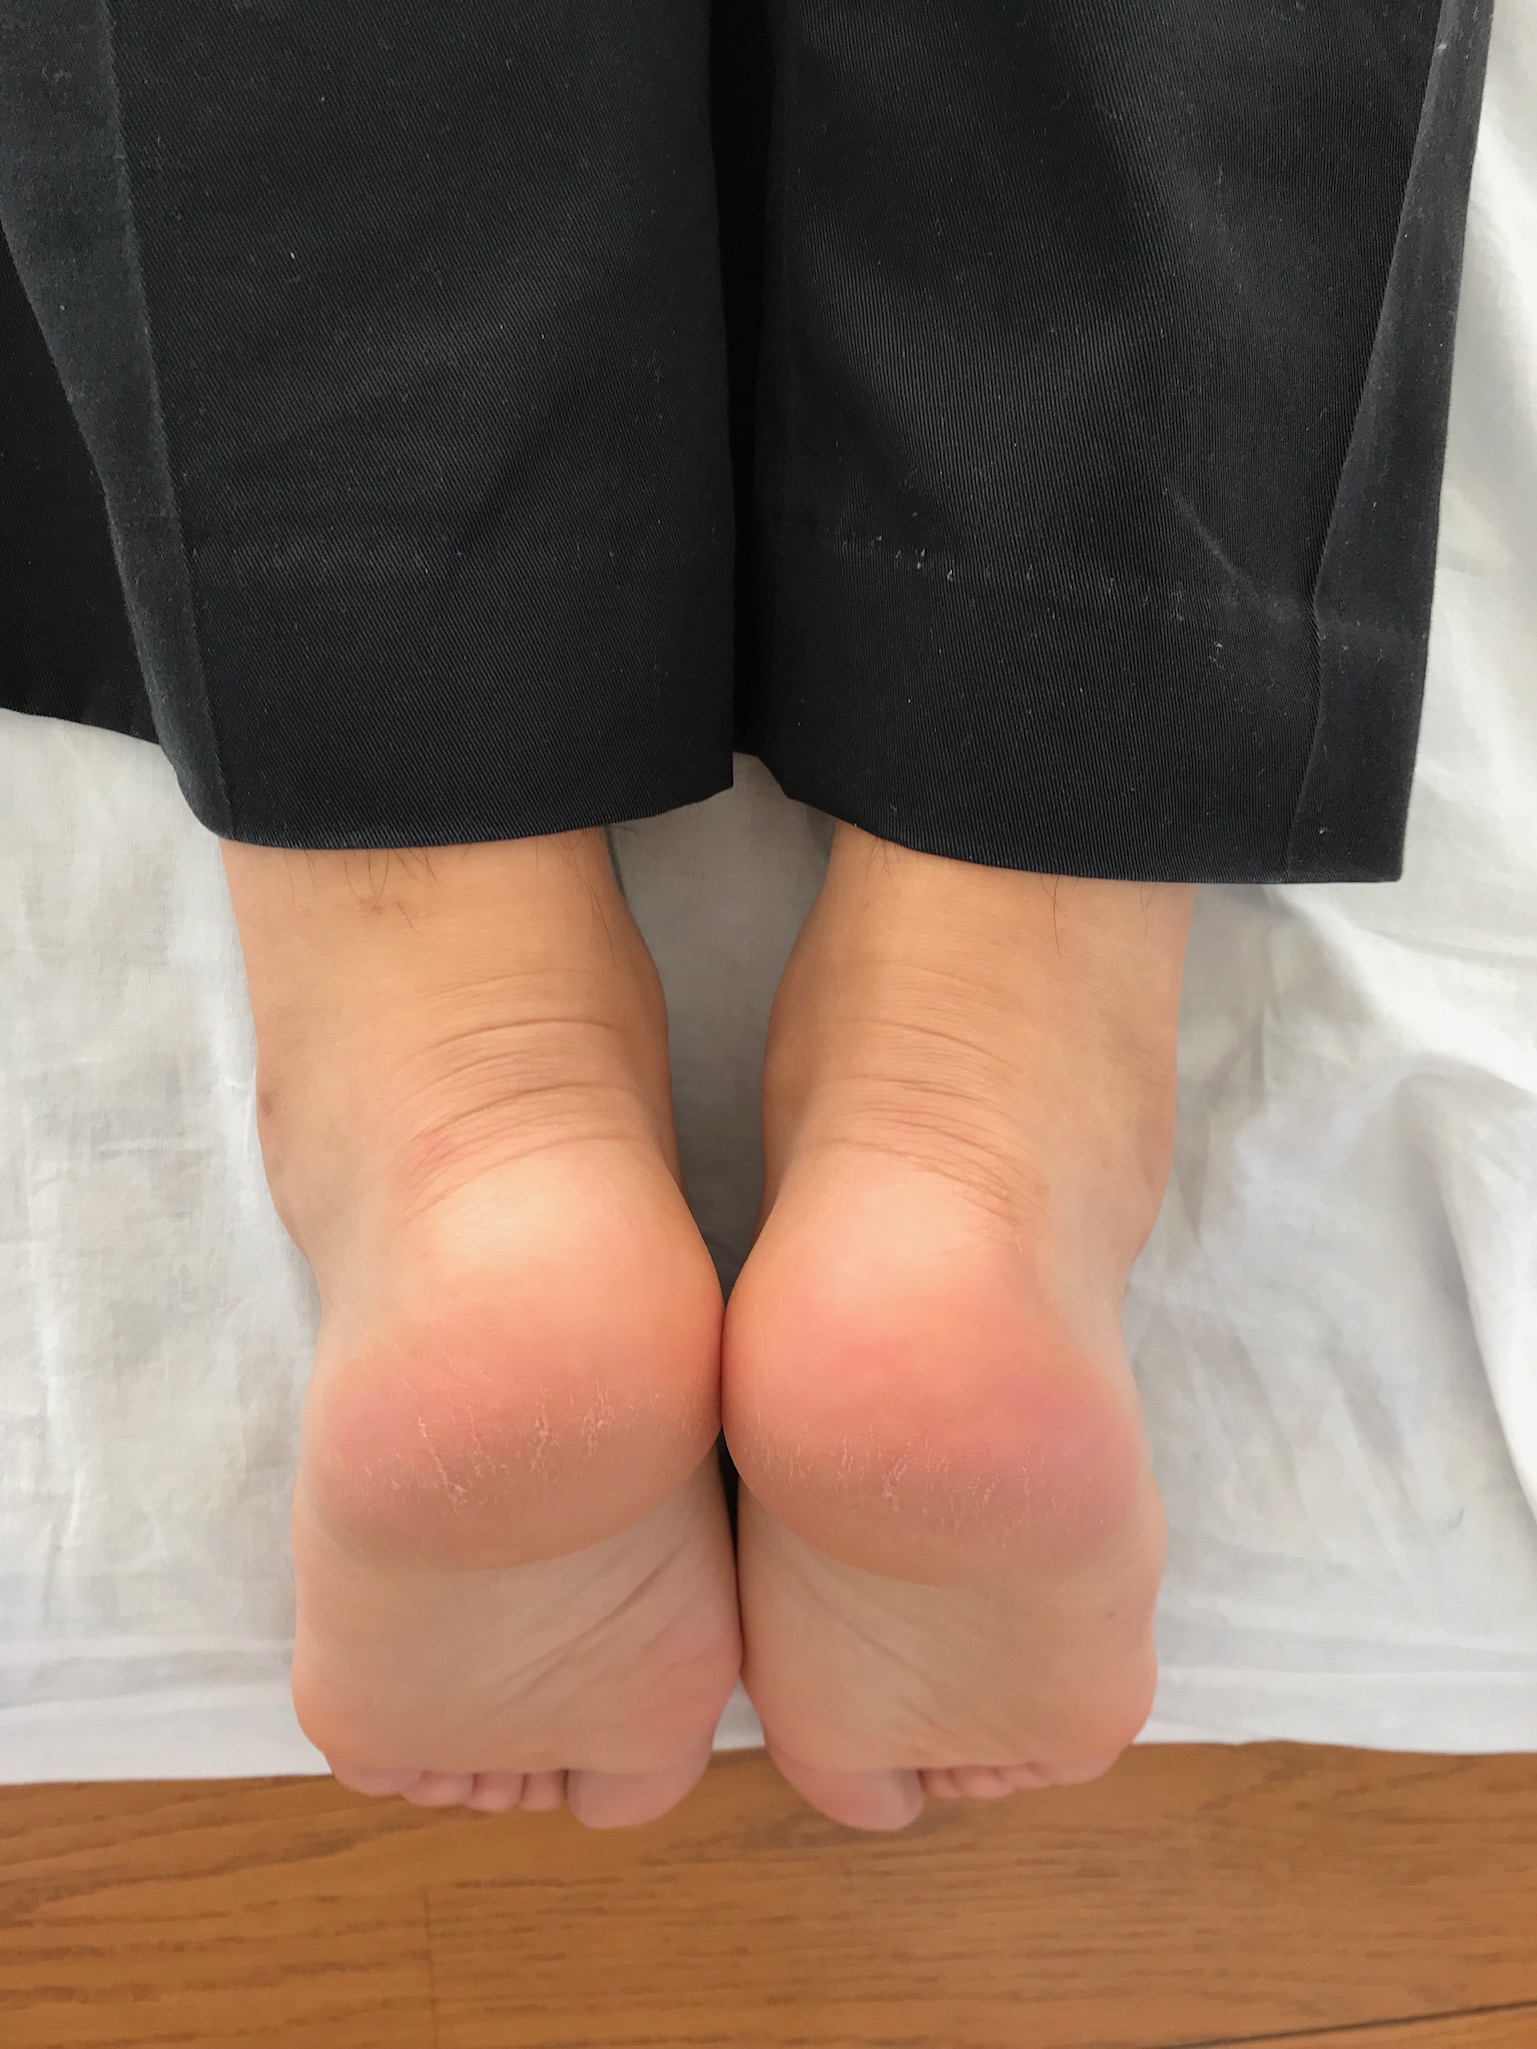 治療院藤森にて骨盤調整手技後の写真です。左右の足の長さが揃っています。